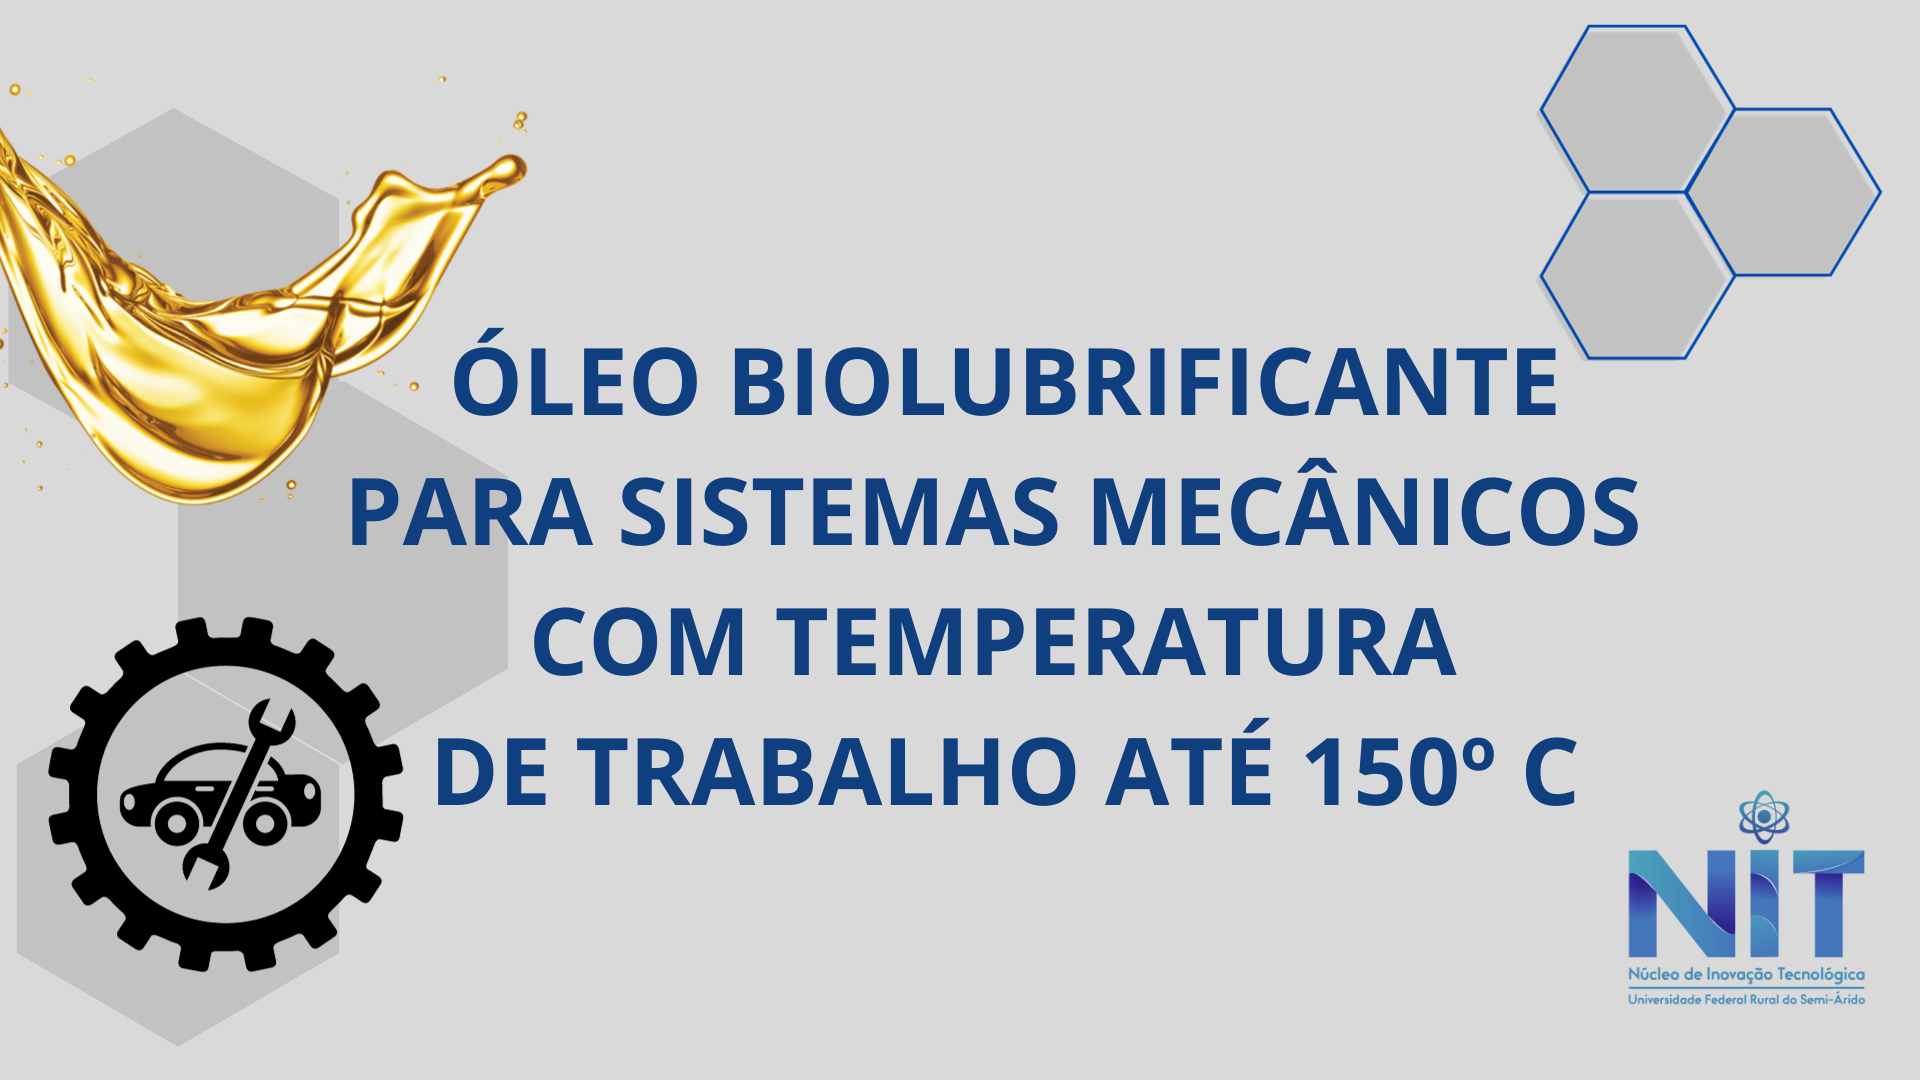 ÓLEO BIOLUBRIFICANTE PARA SISTEMAS MECÂNICOS COM TEMPERATURA DE TRABALHO ATÉ 150º C